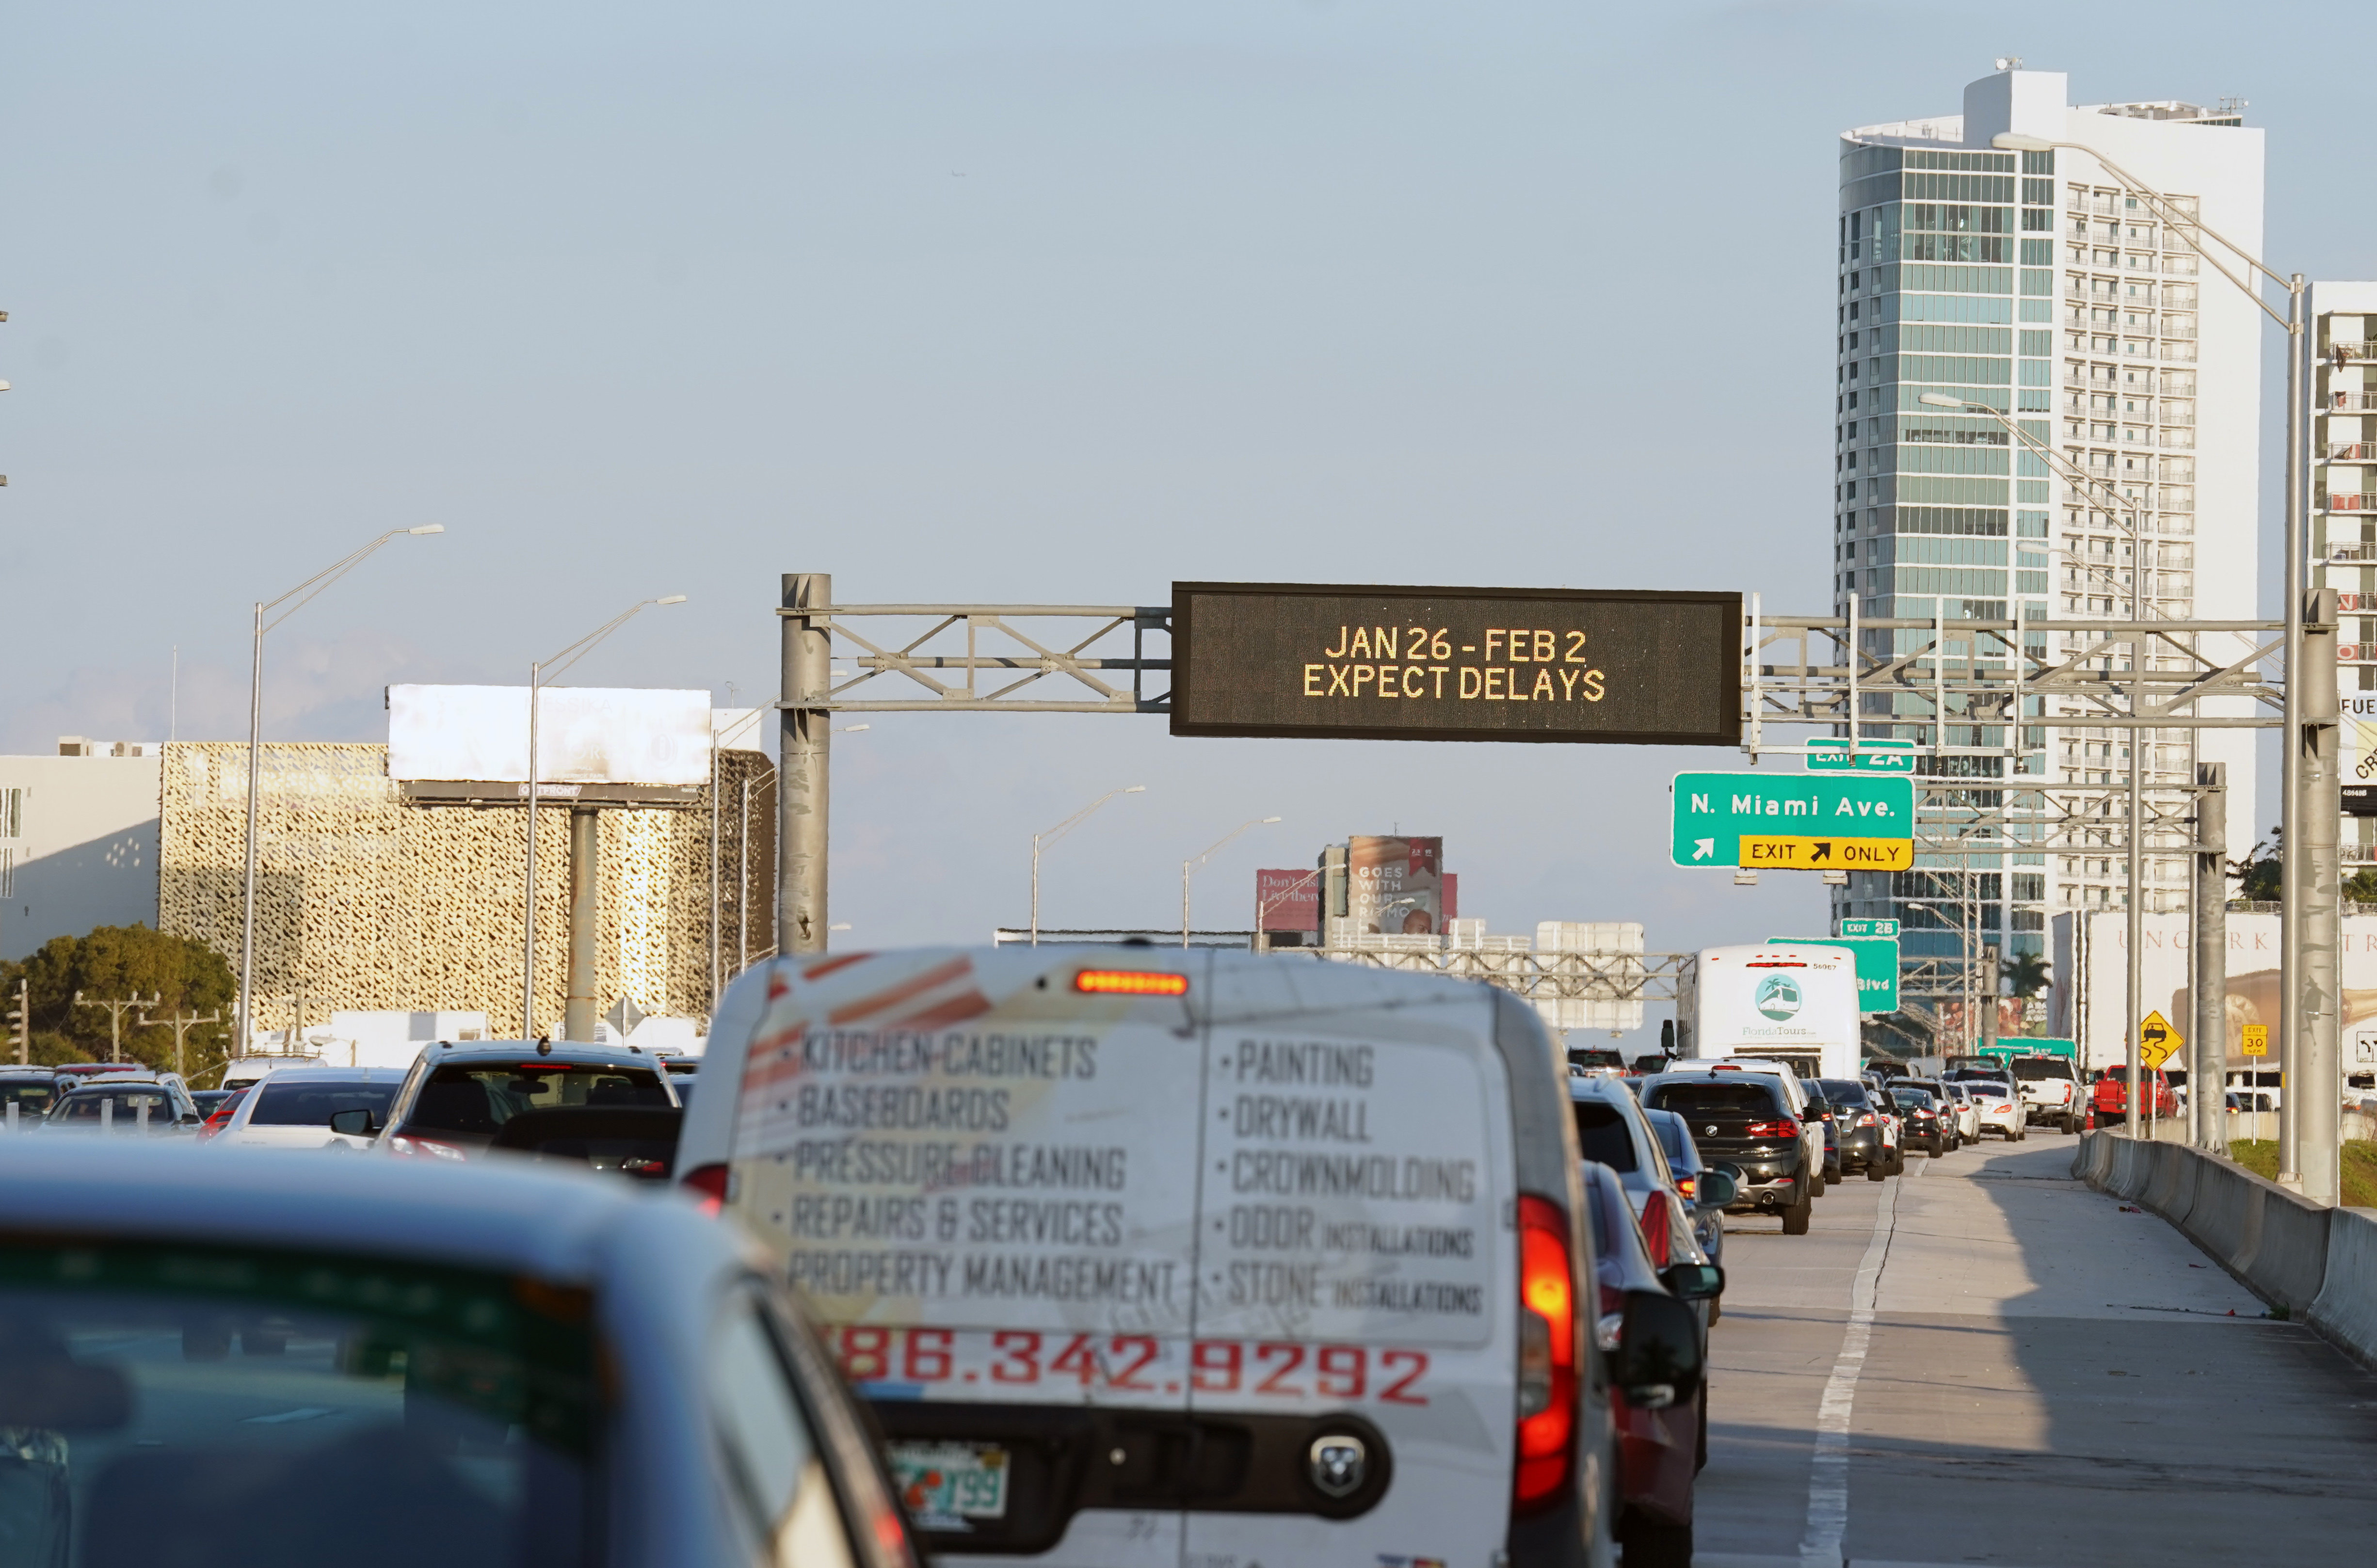 Entre el tráfico y los conductores agresivos, manejar en Miami es riesgoso. (USA TODAY Sports)